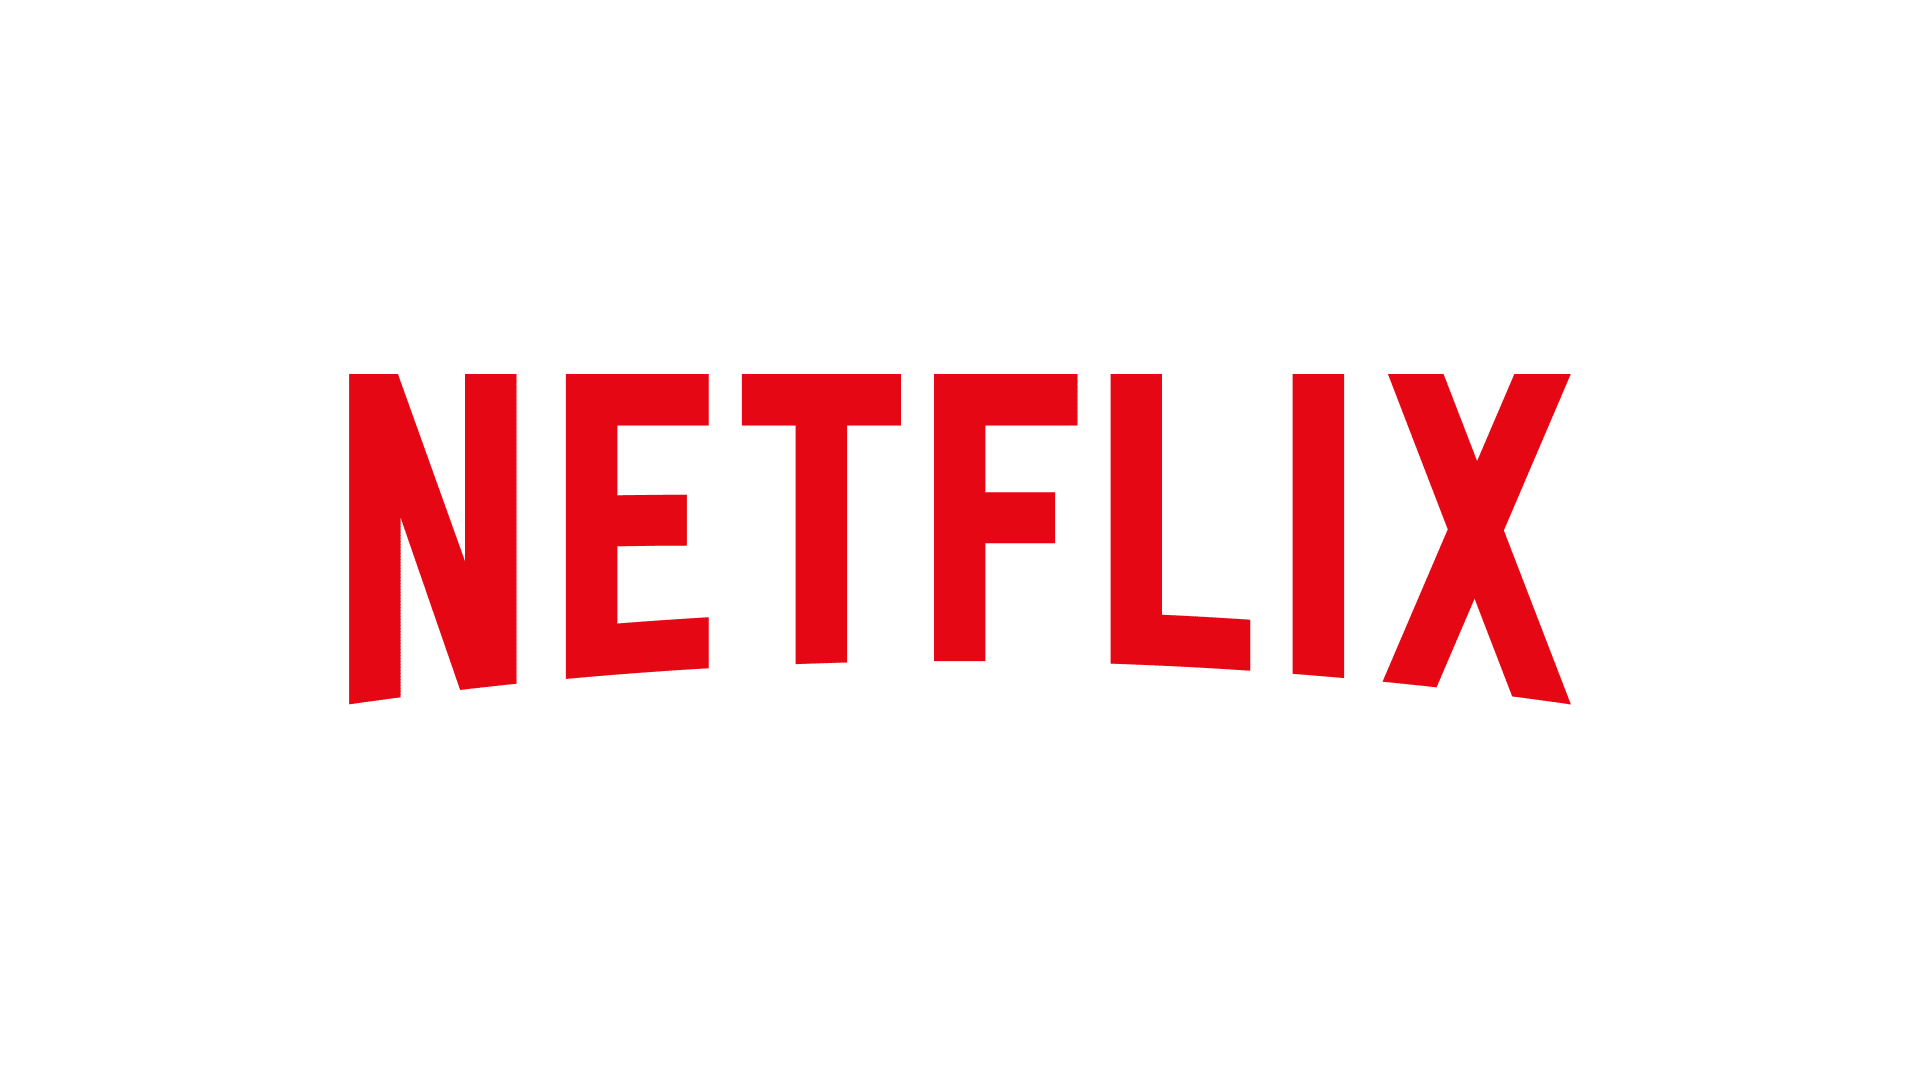 Logos-Readability-Netflix-logo